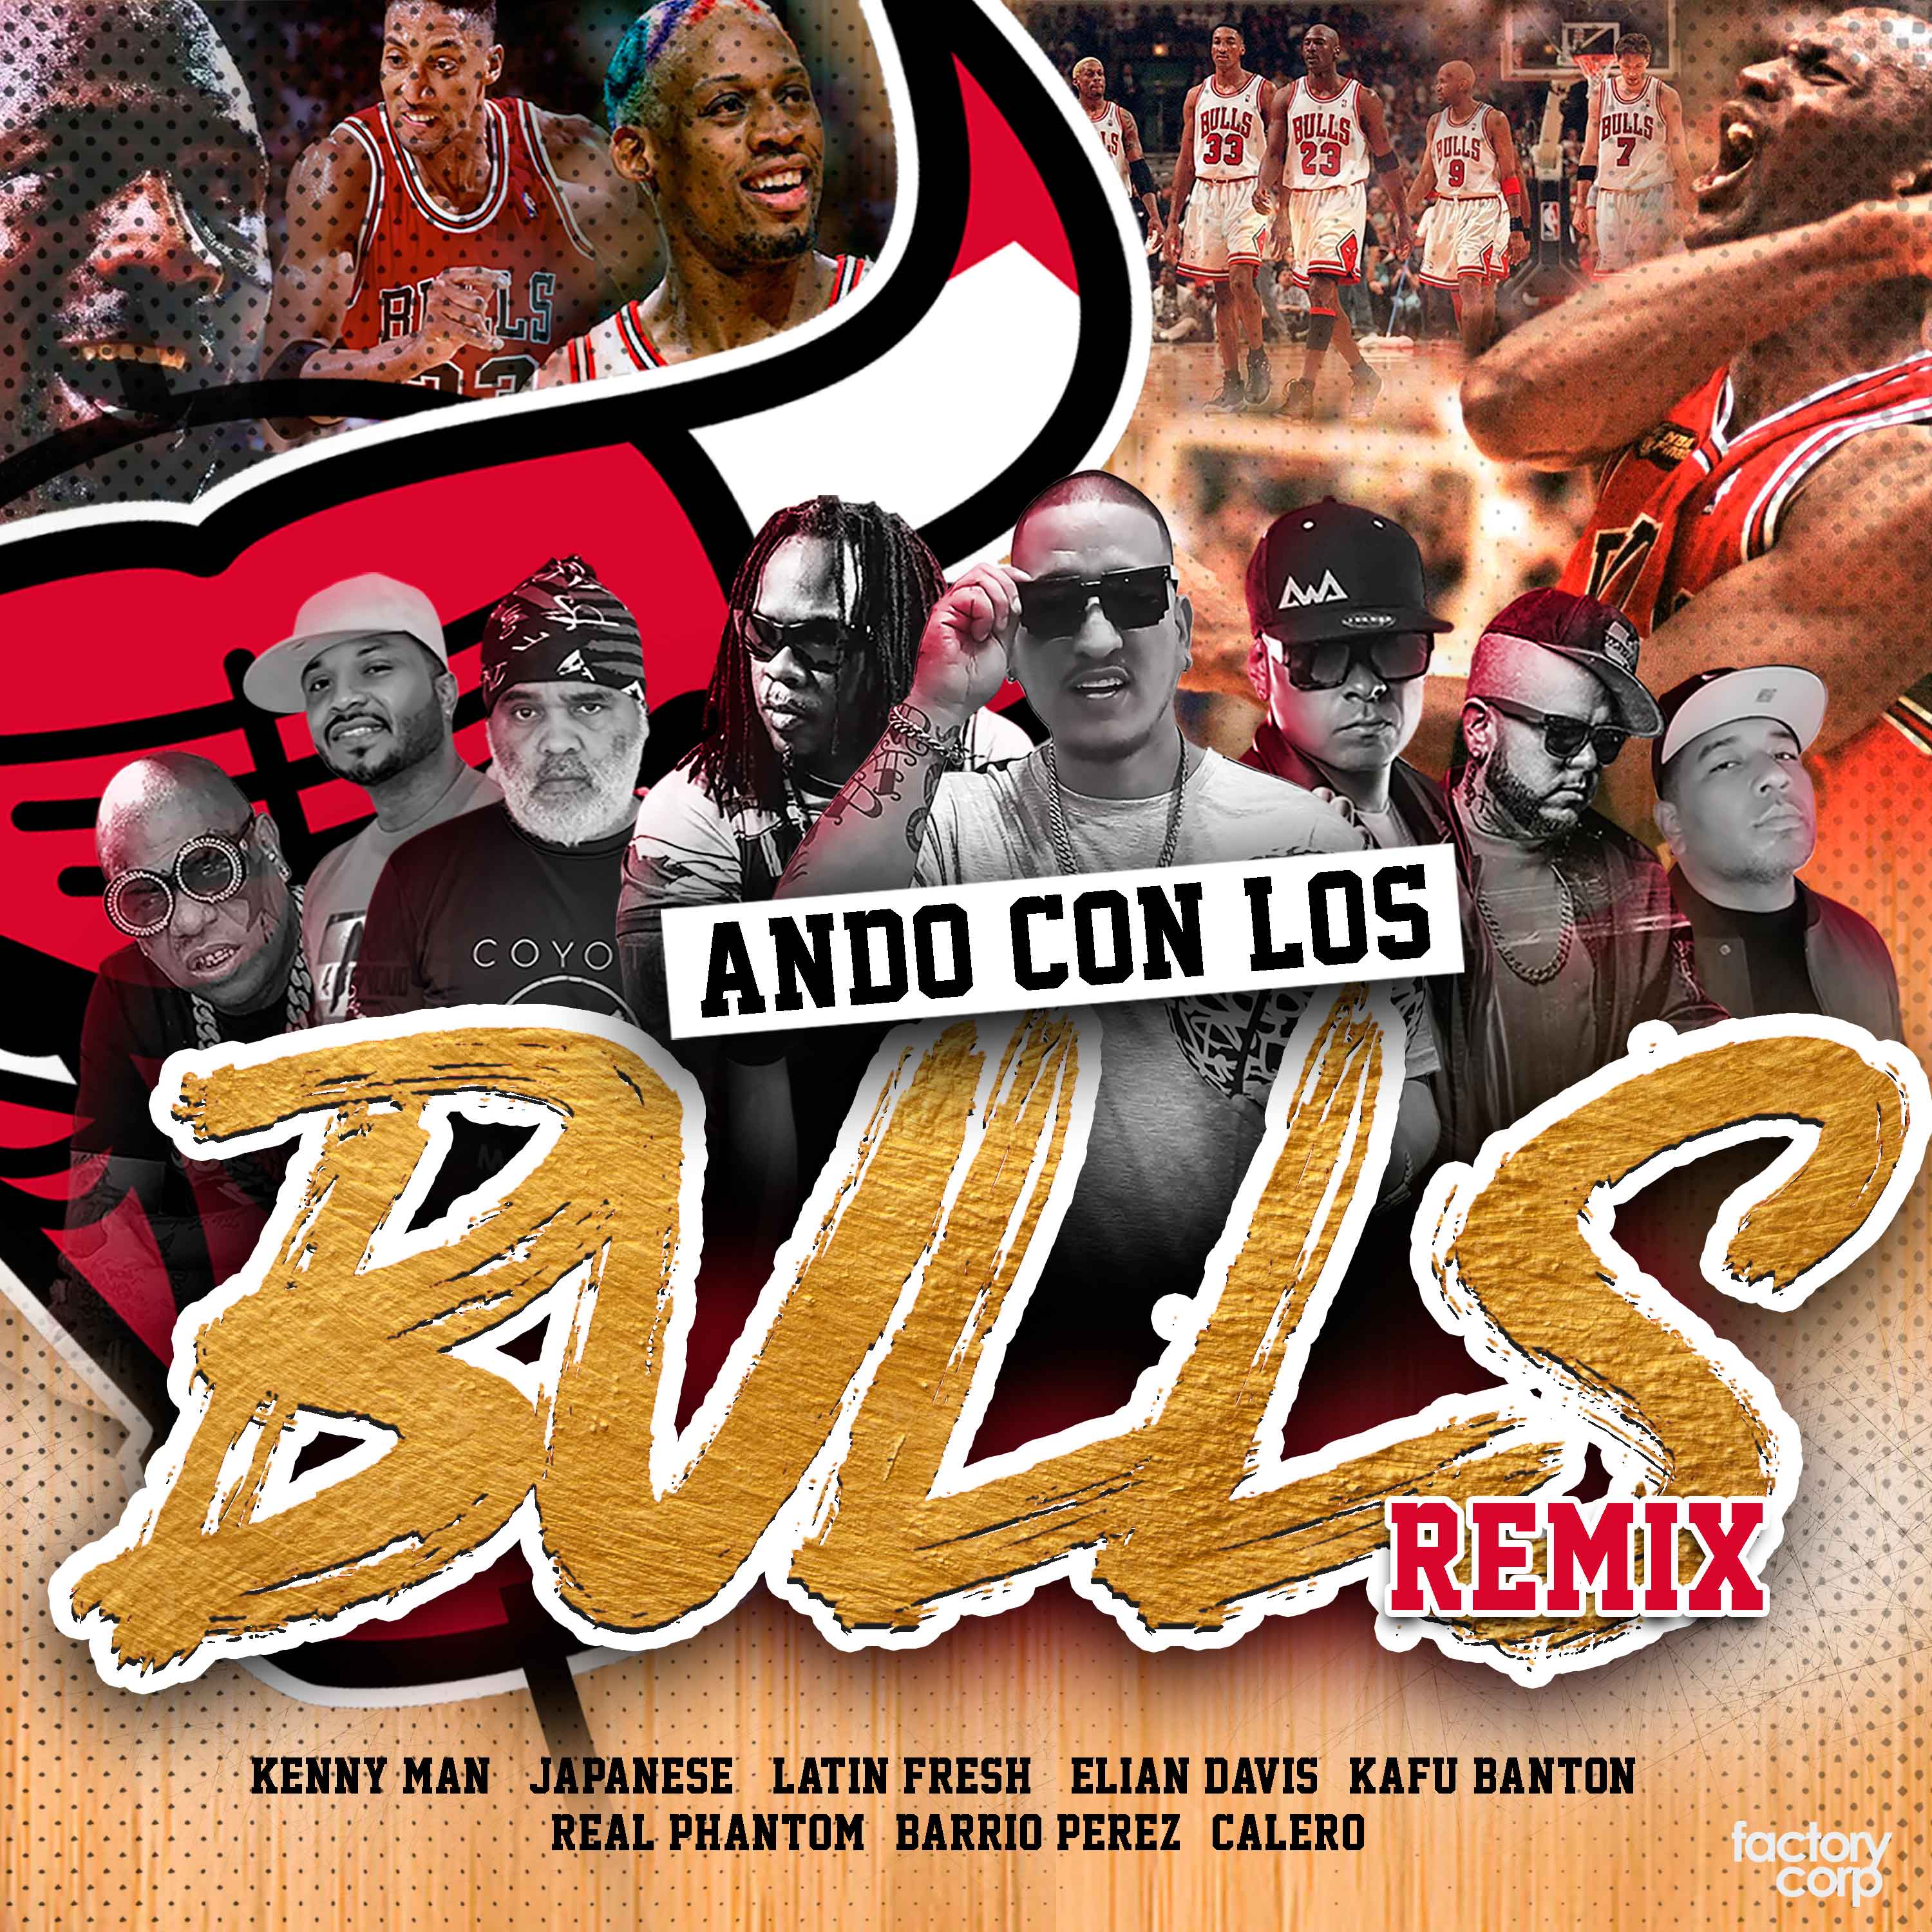 Ando con los bulls (Remix).mp3